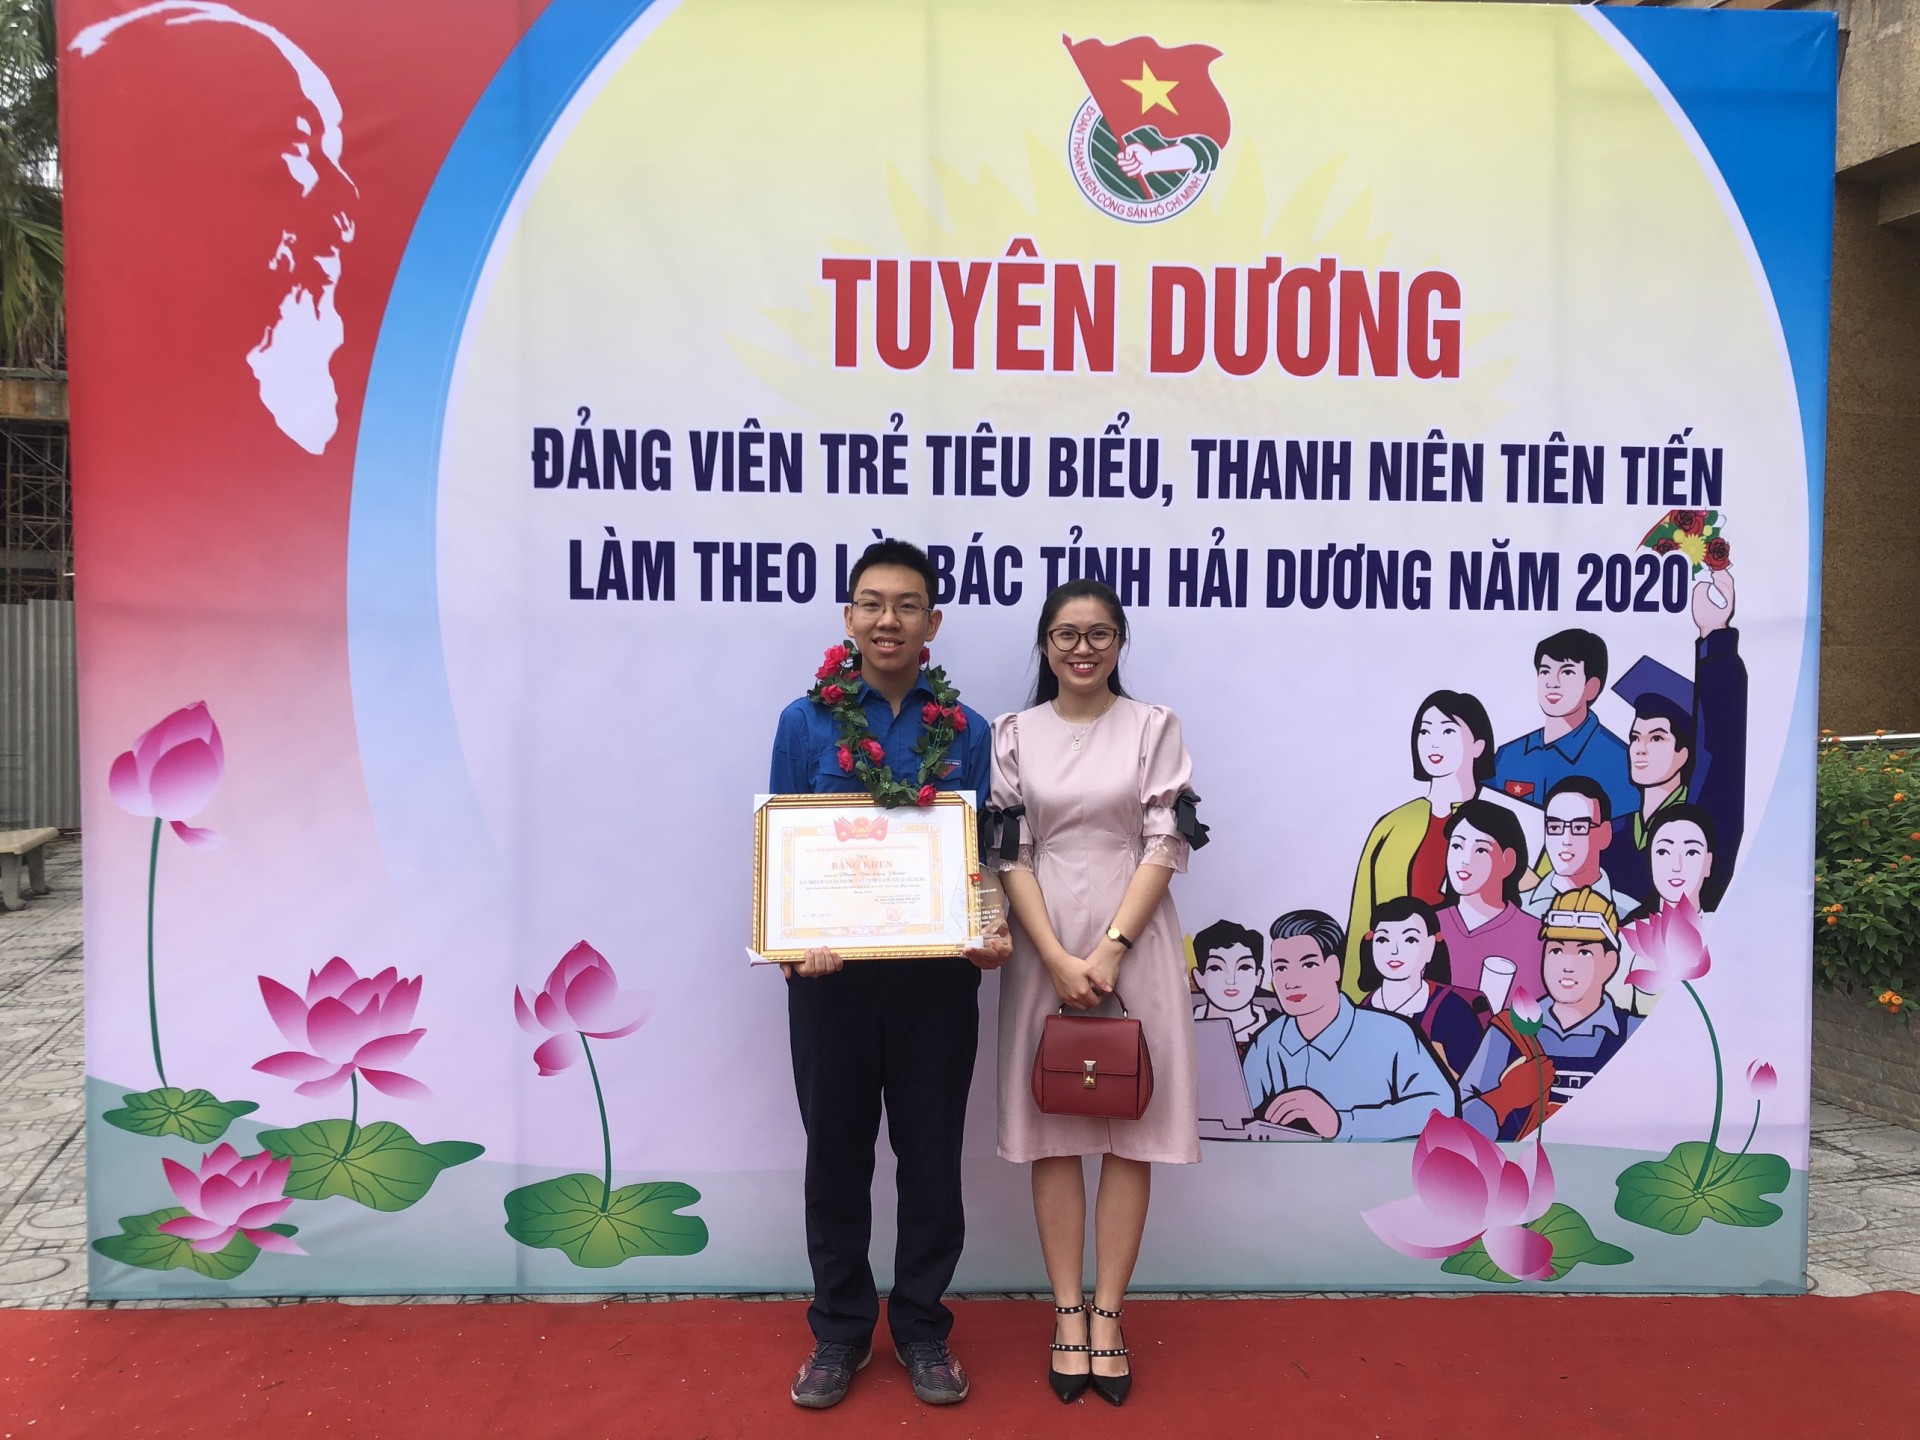 Phạm Văn Long Phước chụp hình cùng cô Lưu Thu Liên – Bí thư Đoàn trường trong buổi Lễ